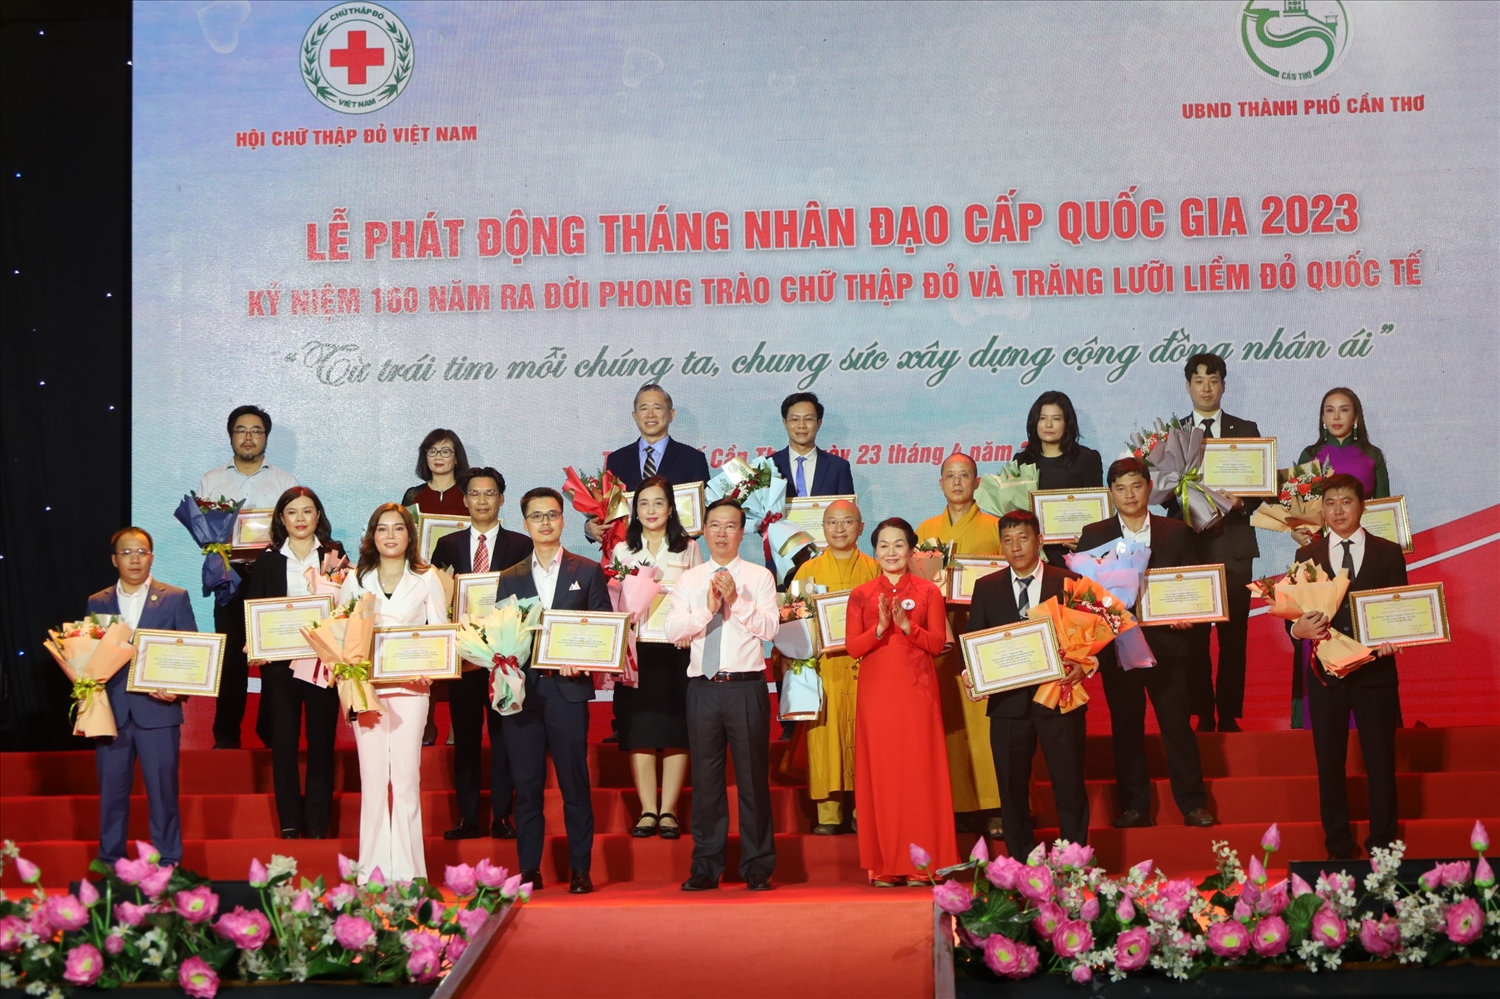 Chủ tịch nước và Chủ tịch trung ương Hội Chữ thập đỏ Việt Nam trao tặng hoa và bảng ghi nhận tấm lòng vàng cho đại diện các nhà tài trợ.